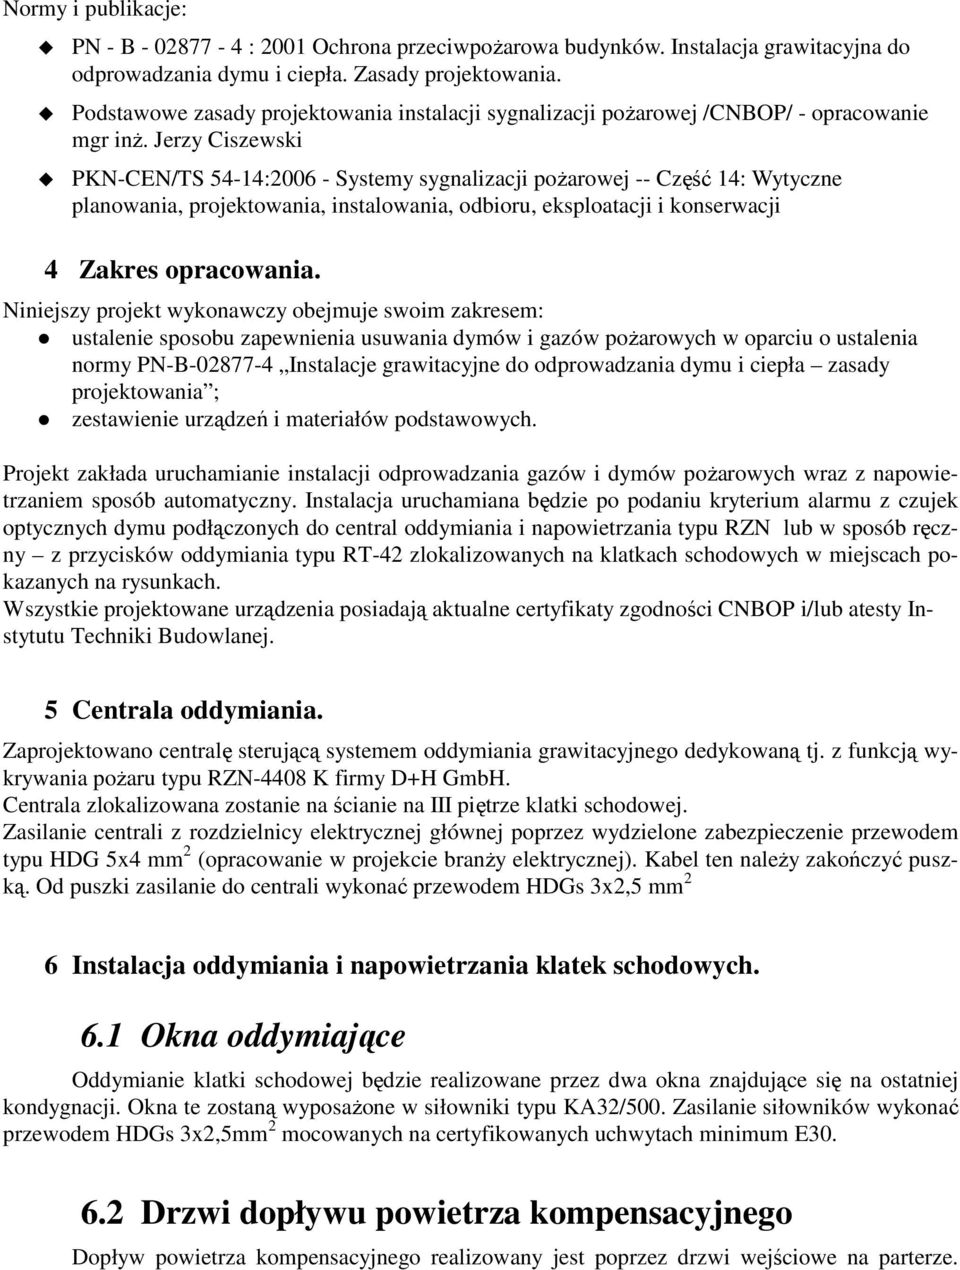 Jerzy Ciszewski PKN-CEN/TS 54-14:2006 - Systemy sygnalizacji poŝarowej -- Część 14: Wytyczne planowania, projektowania, instalowania, odbioru, eksploatacji i konserwacji 4 Zakres opracowania.